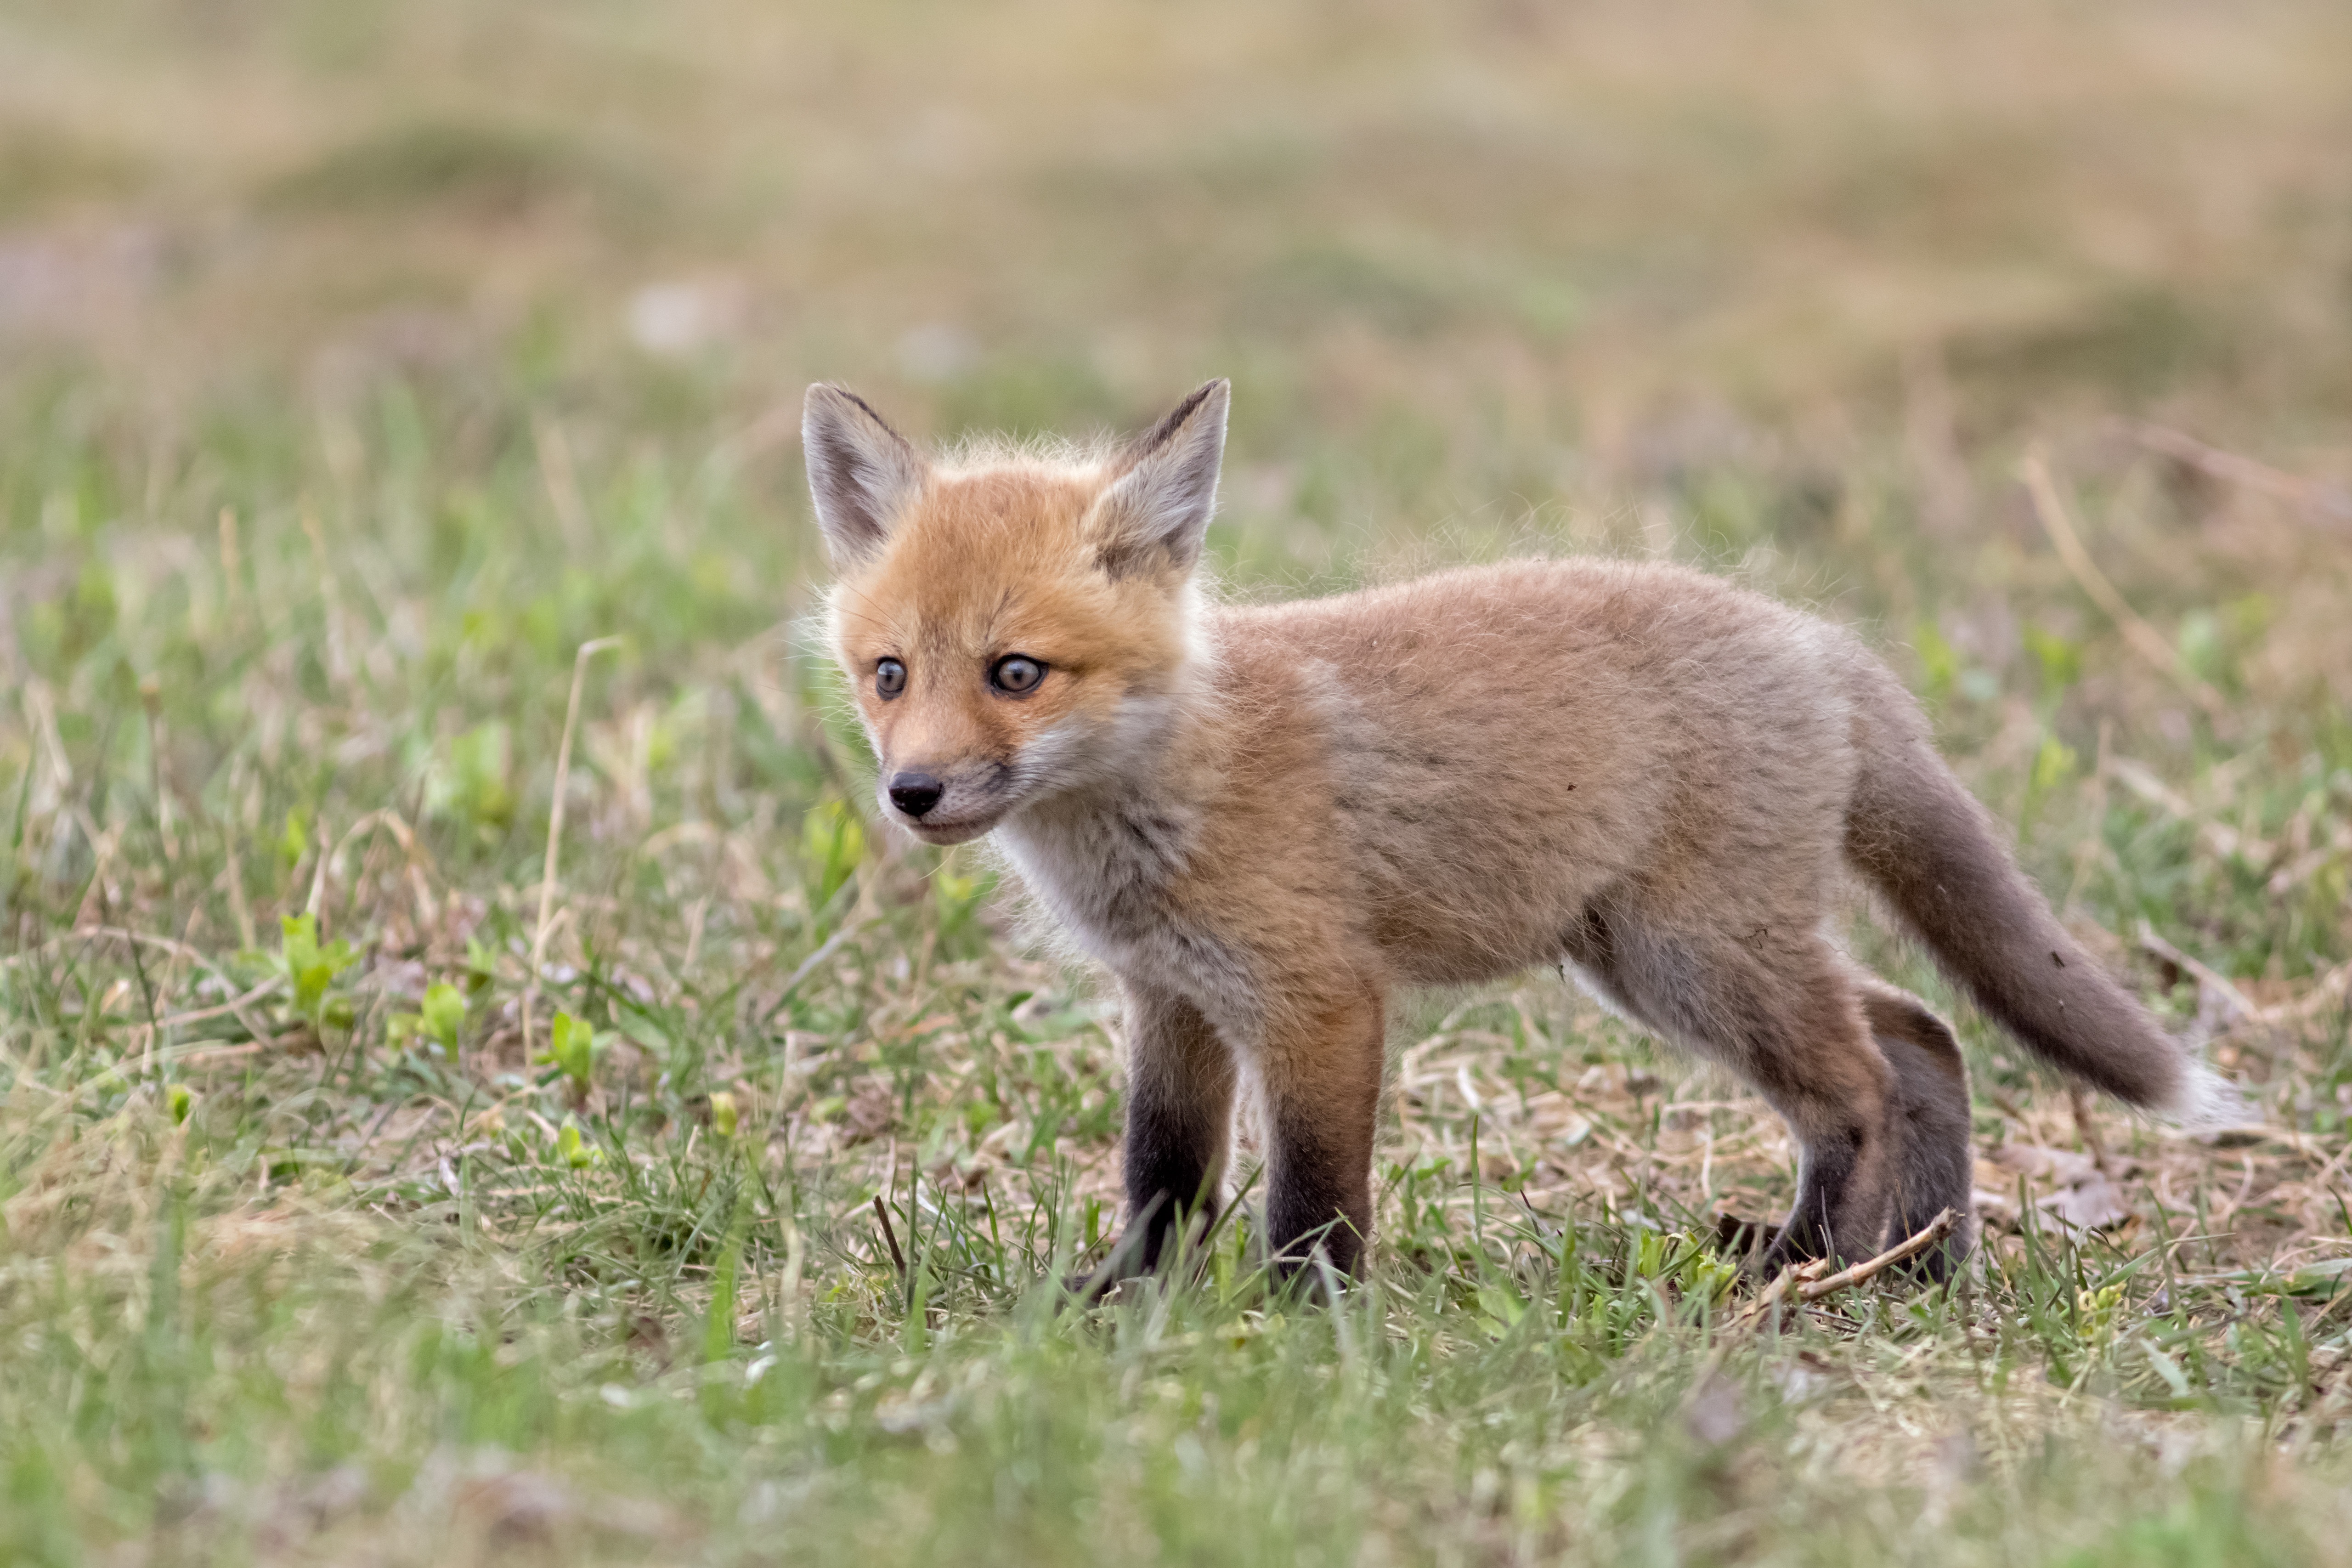 K fox. Лисы. Детеныш лисы. Лиса в траве. Обои на рабочий стол лисы.